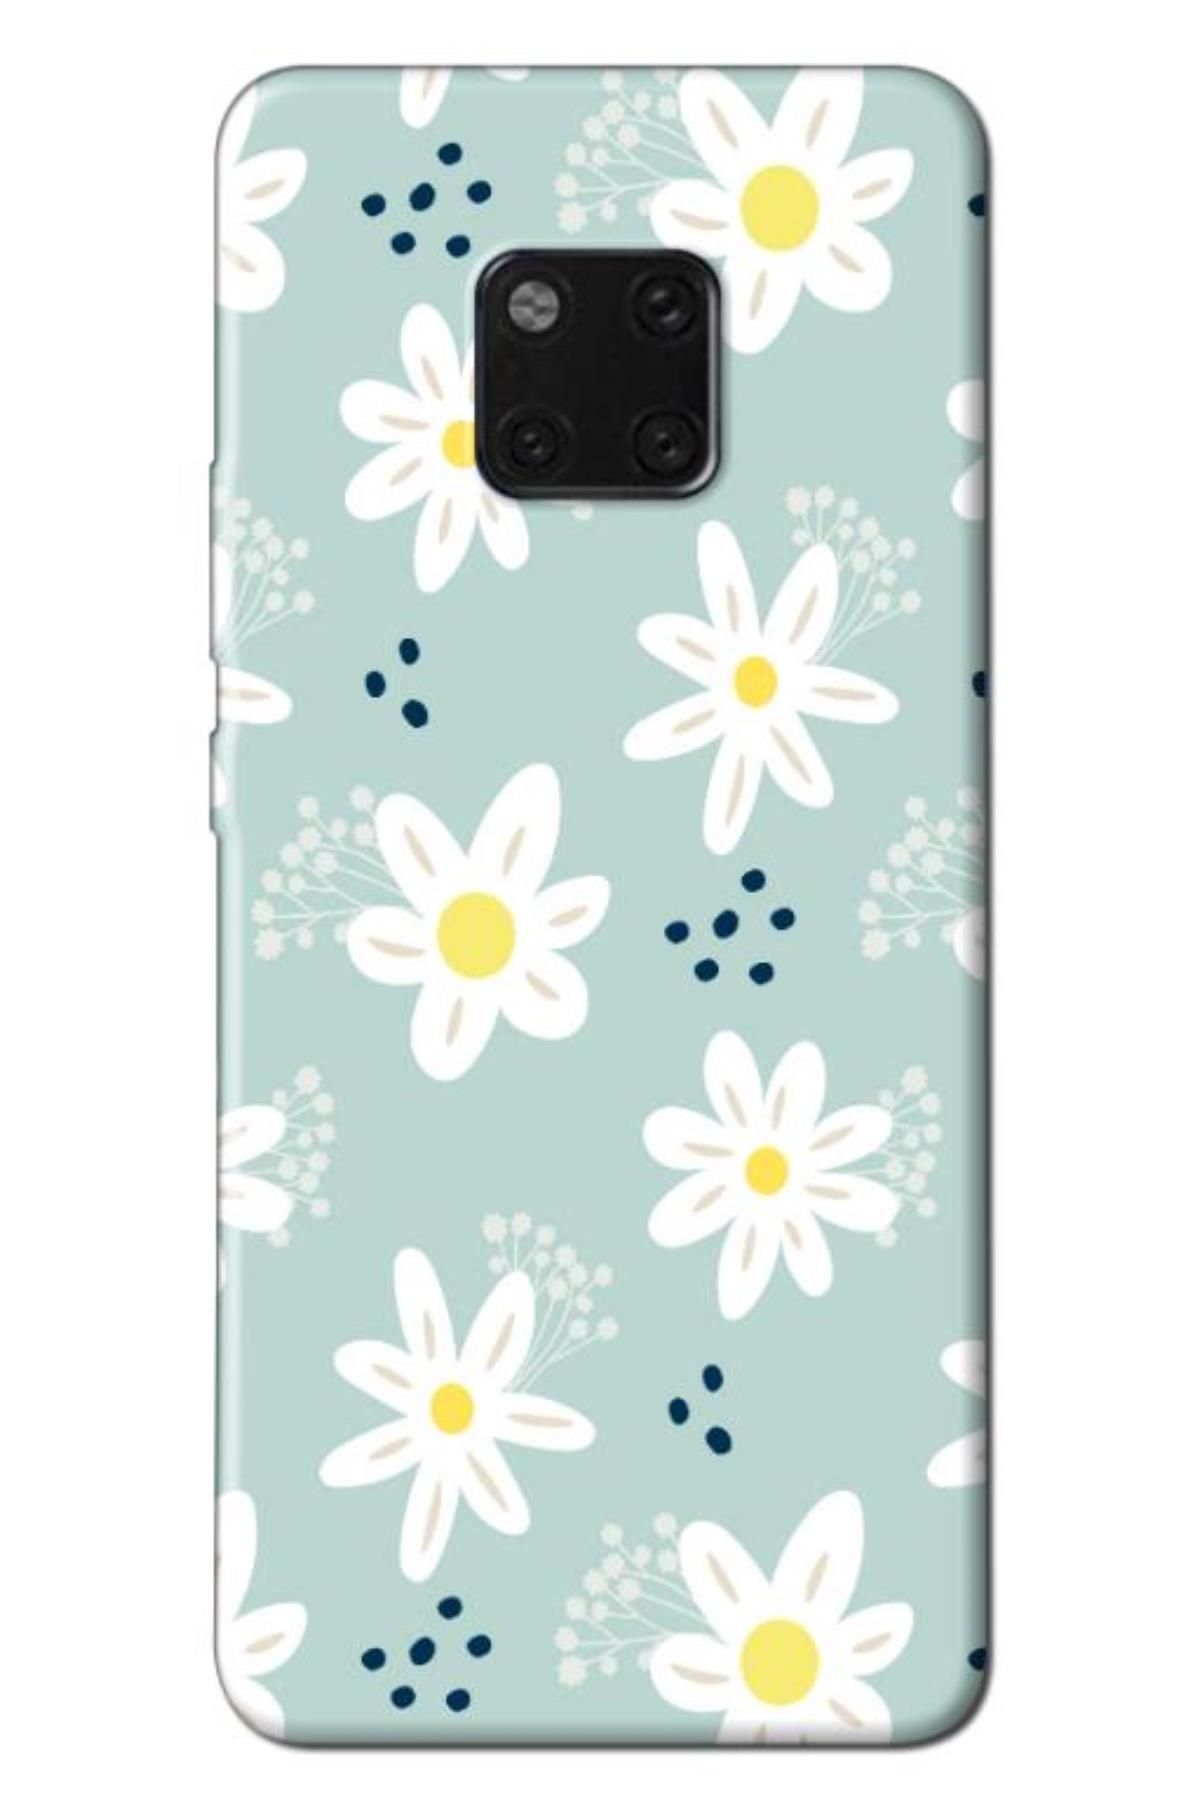 Zebana Huawei Mate 20 Pro Uyumlu Kılıf Bahar Çiçekleri 10 Silikon Kılıf (BASKILI)